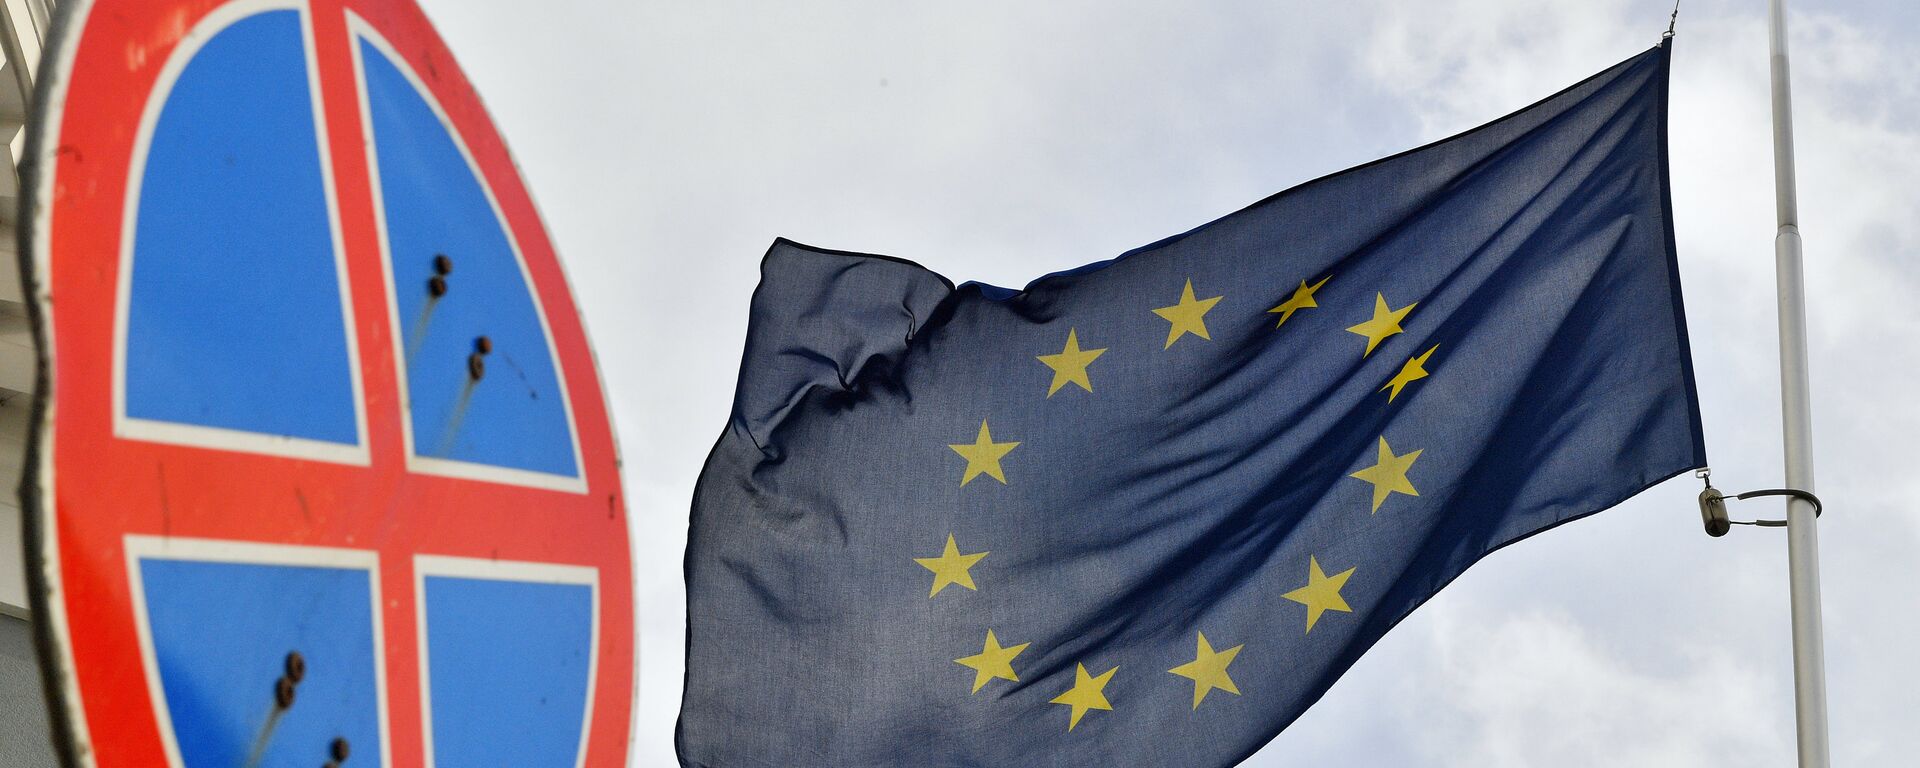 Флаг ЕС у здания представительства Европейского Союза в Москве. - Sputnik Latvija, 1920, 21.11.2020